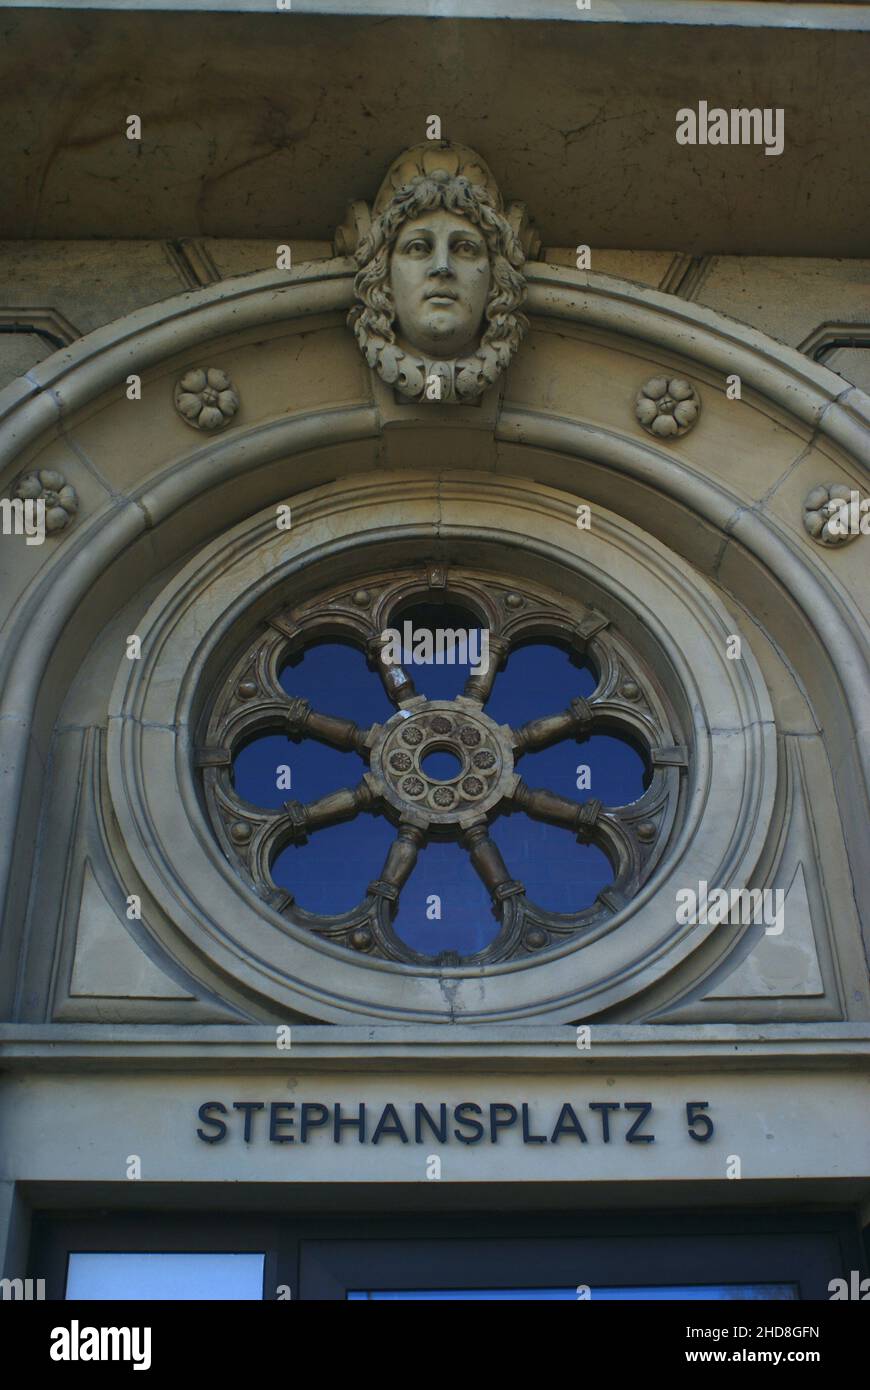 Hamburg, Germany - Stephansplatz 5, Alte Post nach Restaurierung, Details Stock Photo